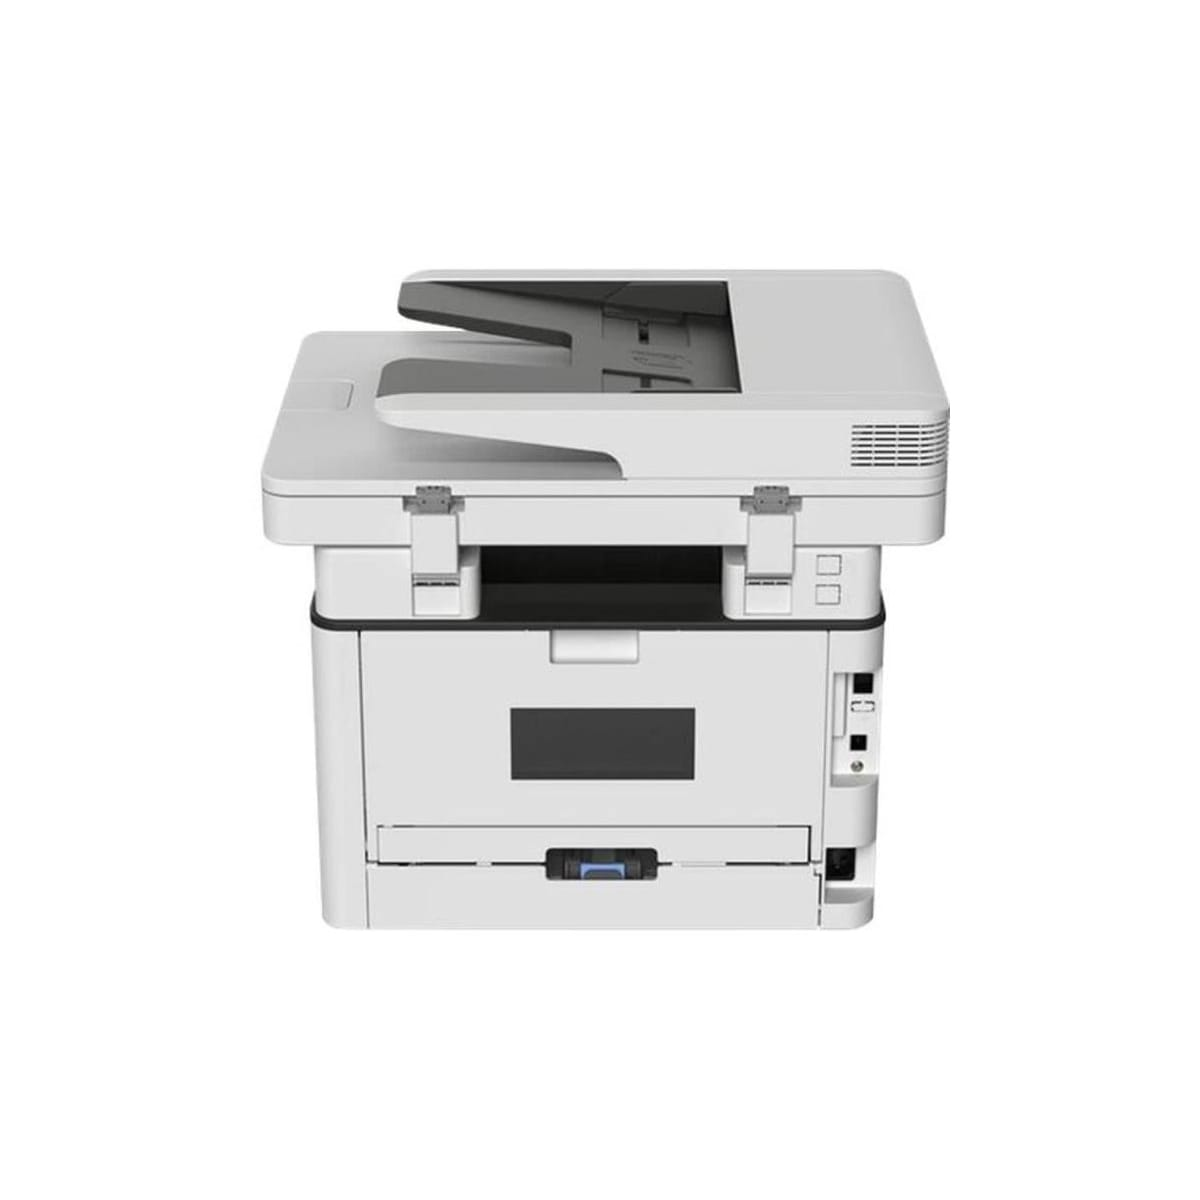 LEXMARK MB2236i Laser Cloud-Fax, s/w Multifunktionsgeräte Scanner, Kopierer, 4-in-1, Drucker, (A4, Drucker und ADF, Laser-Multifunktionsdrucker